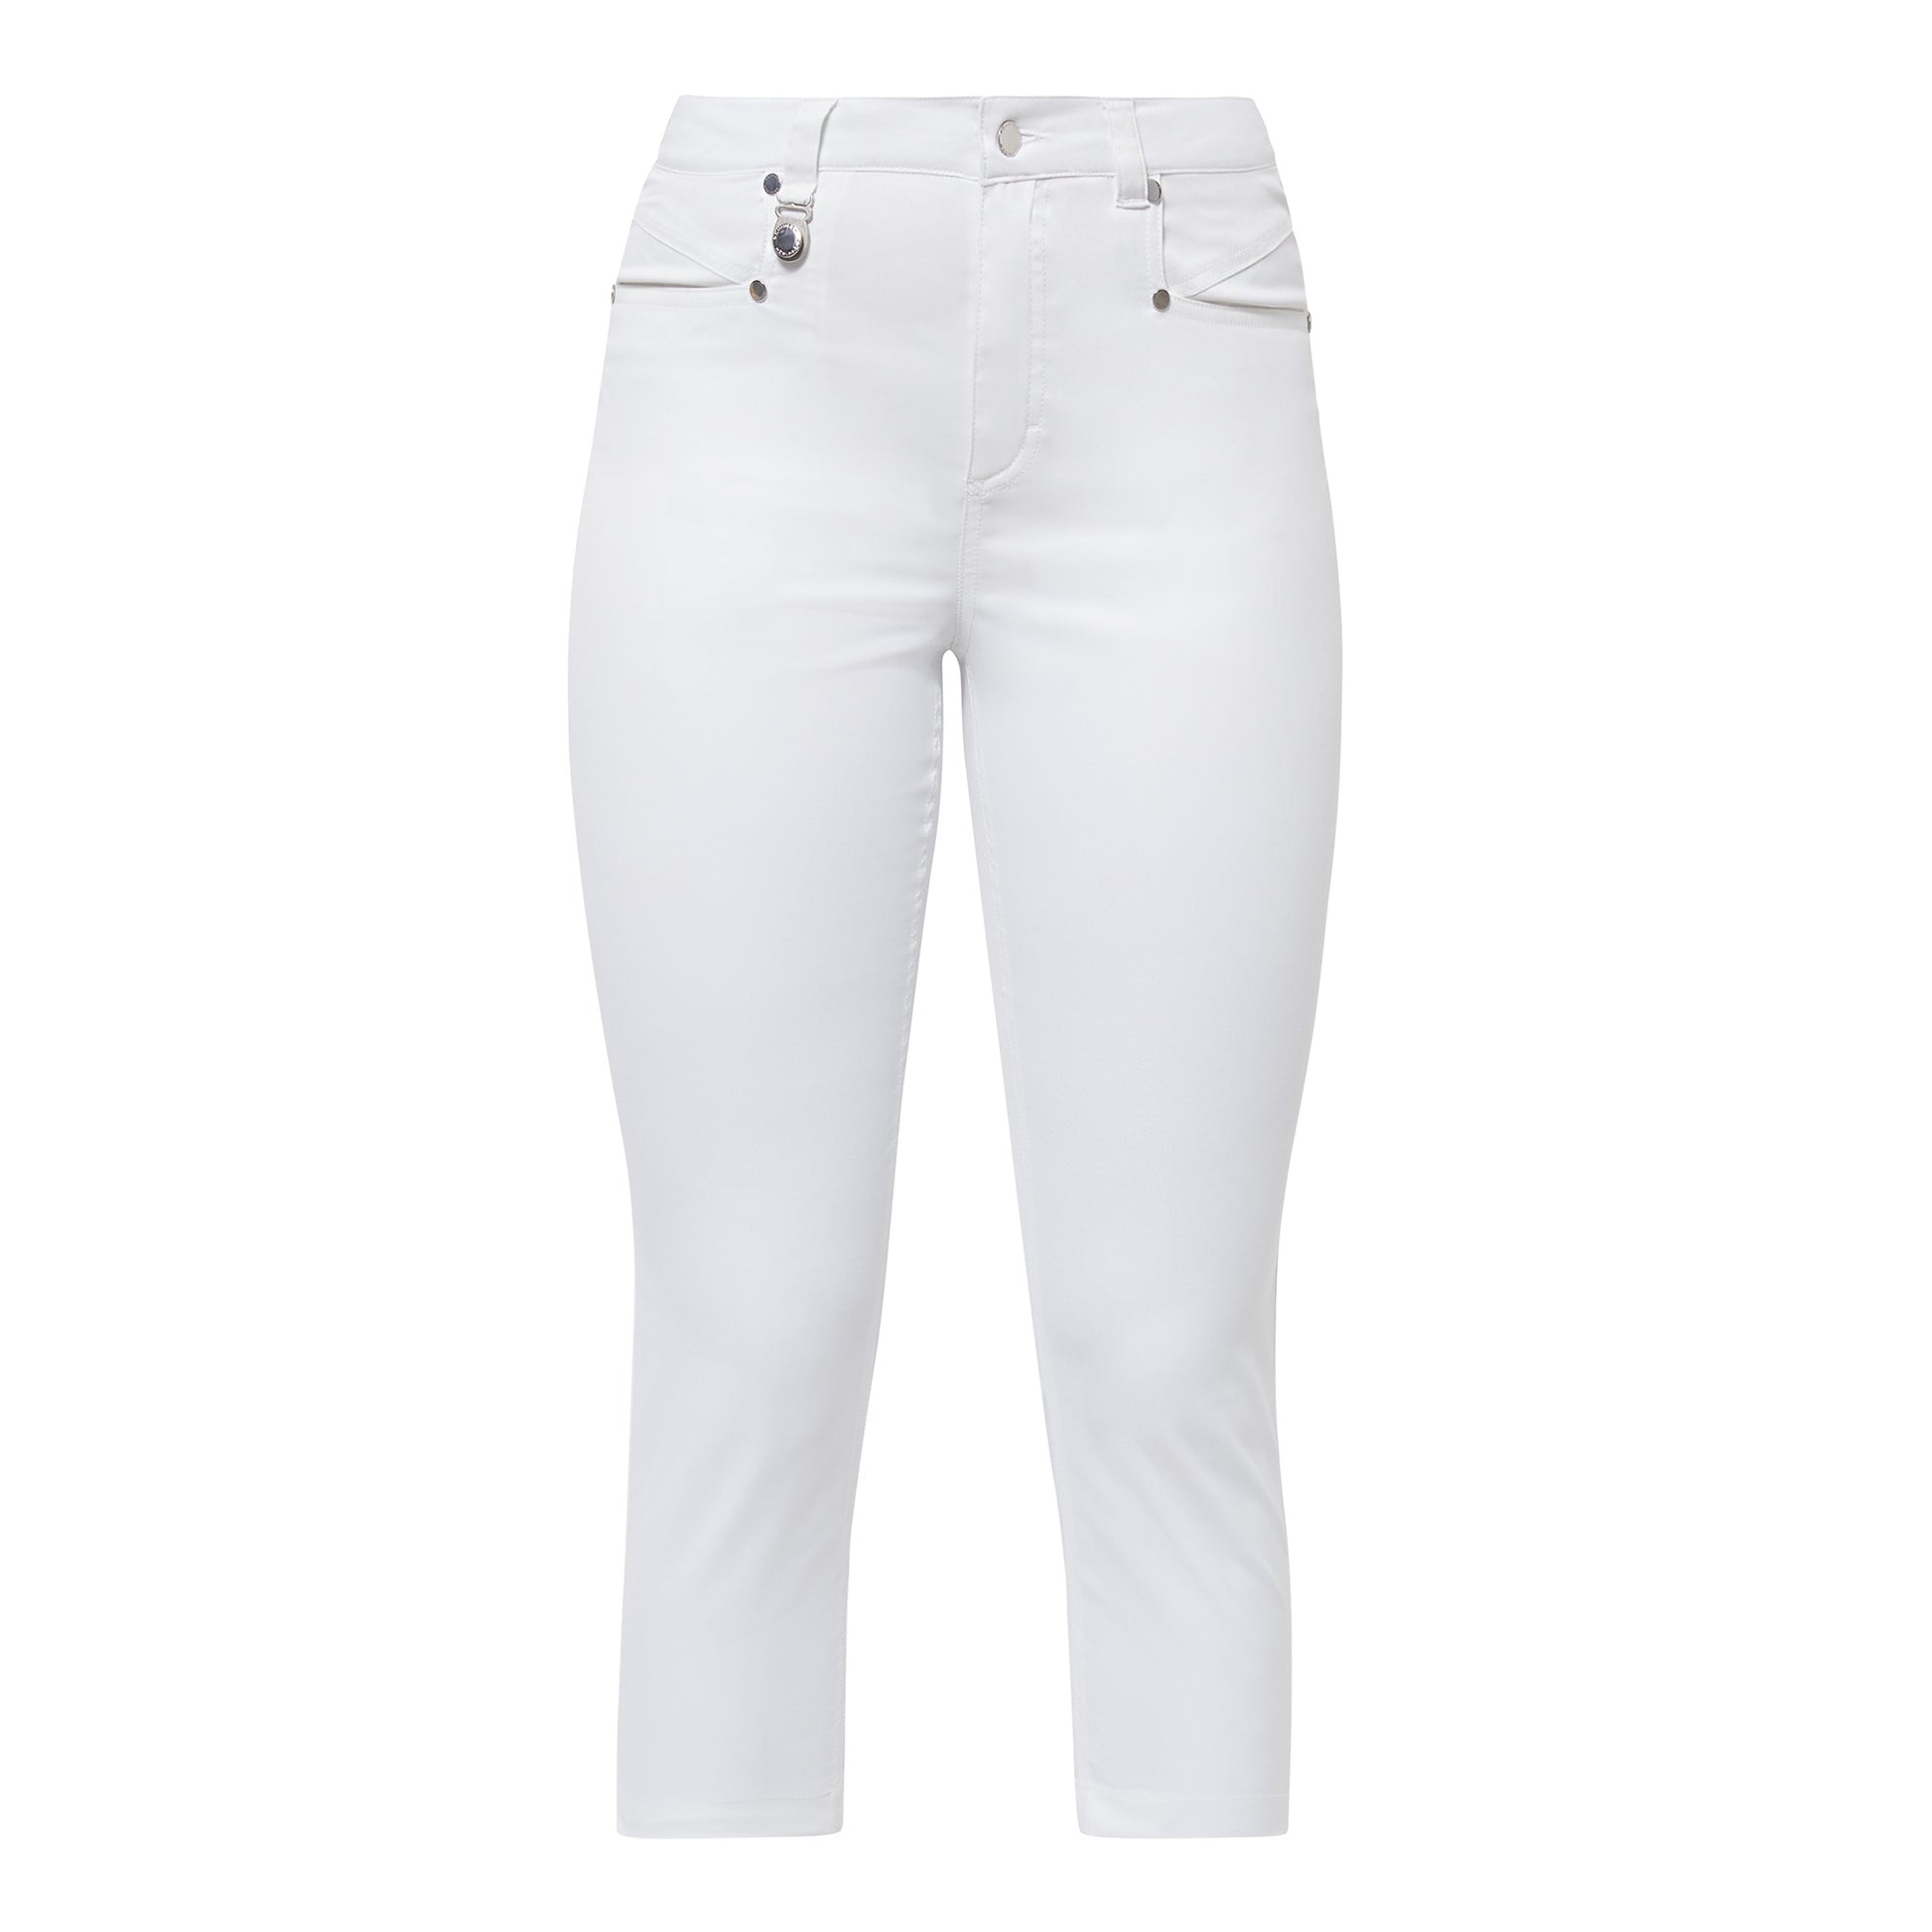 Rohnisch Ladies Chic Slim-Fit Capris in White - Size 14 Only Left